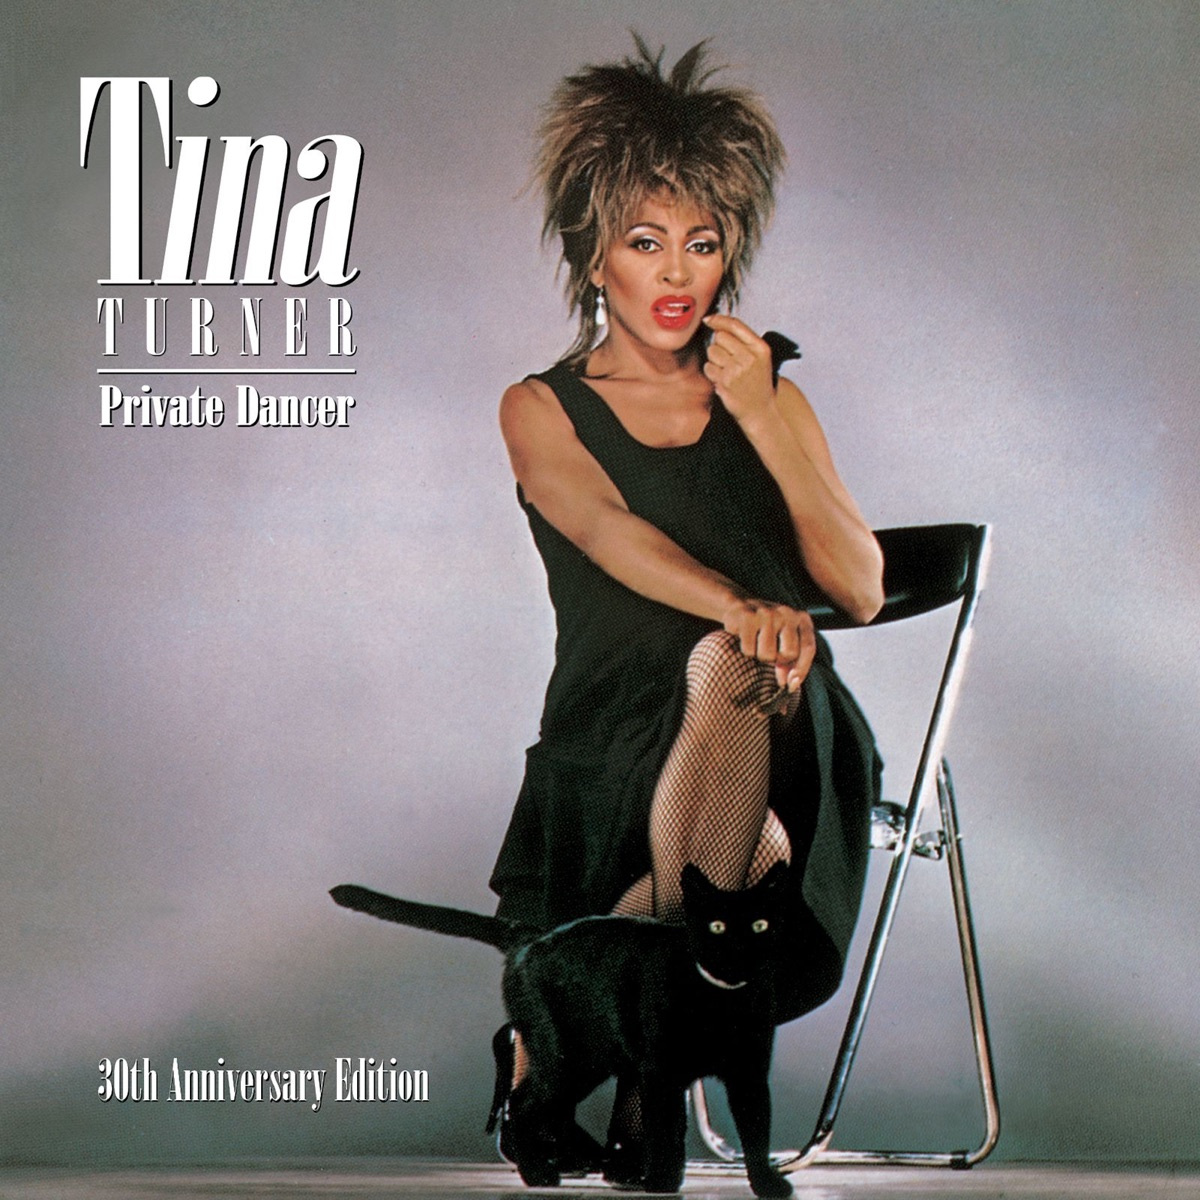 # 所有音樂人都尊敬的搖滾女王，Tina Turner 享壽 83 歲：家暴、毒癮、喪子都無法擊倒這位傳奇歌手！ 4